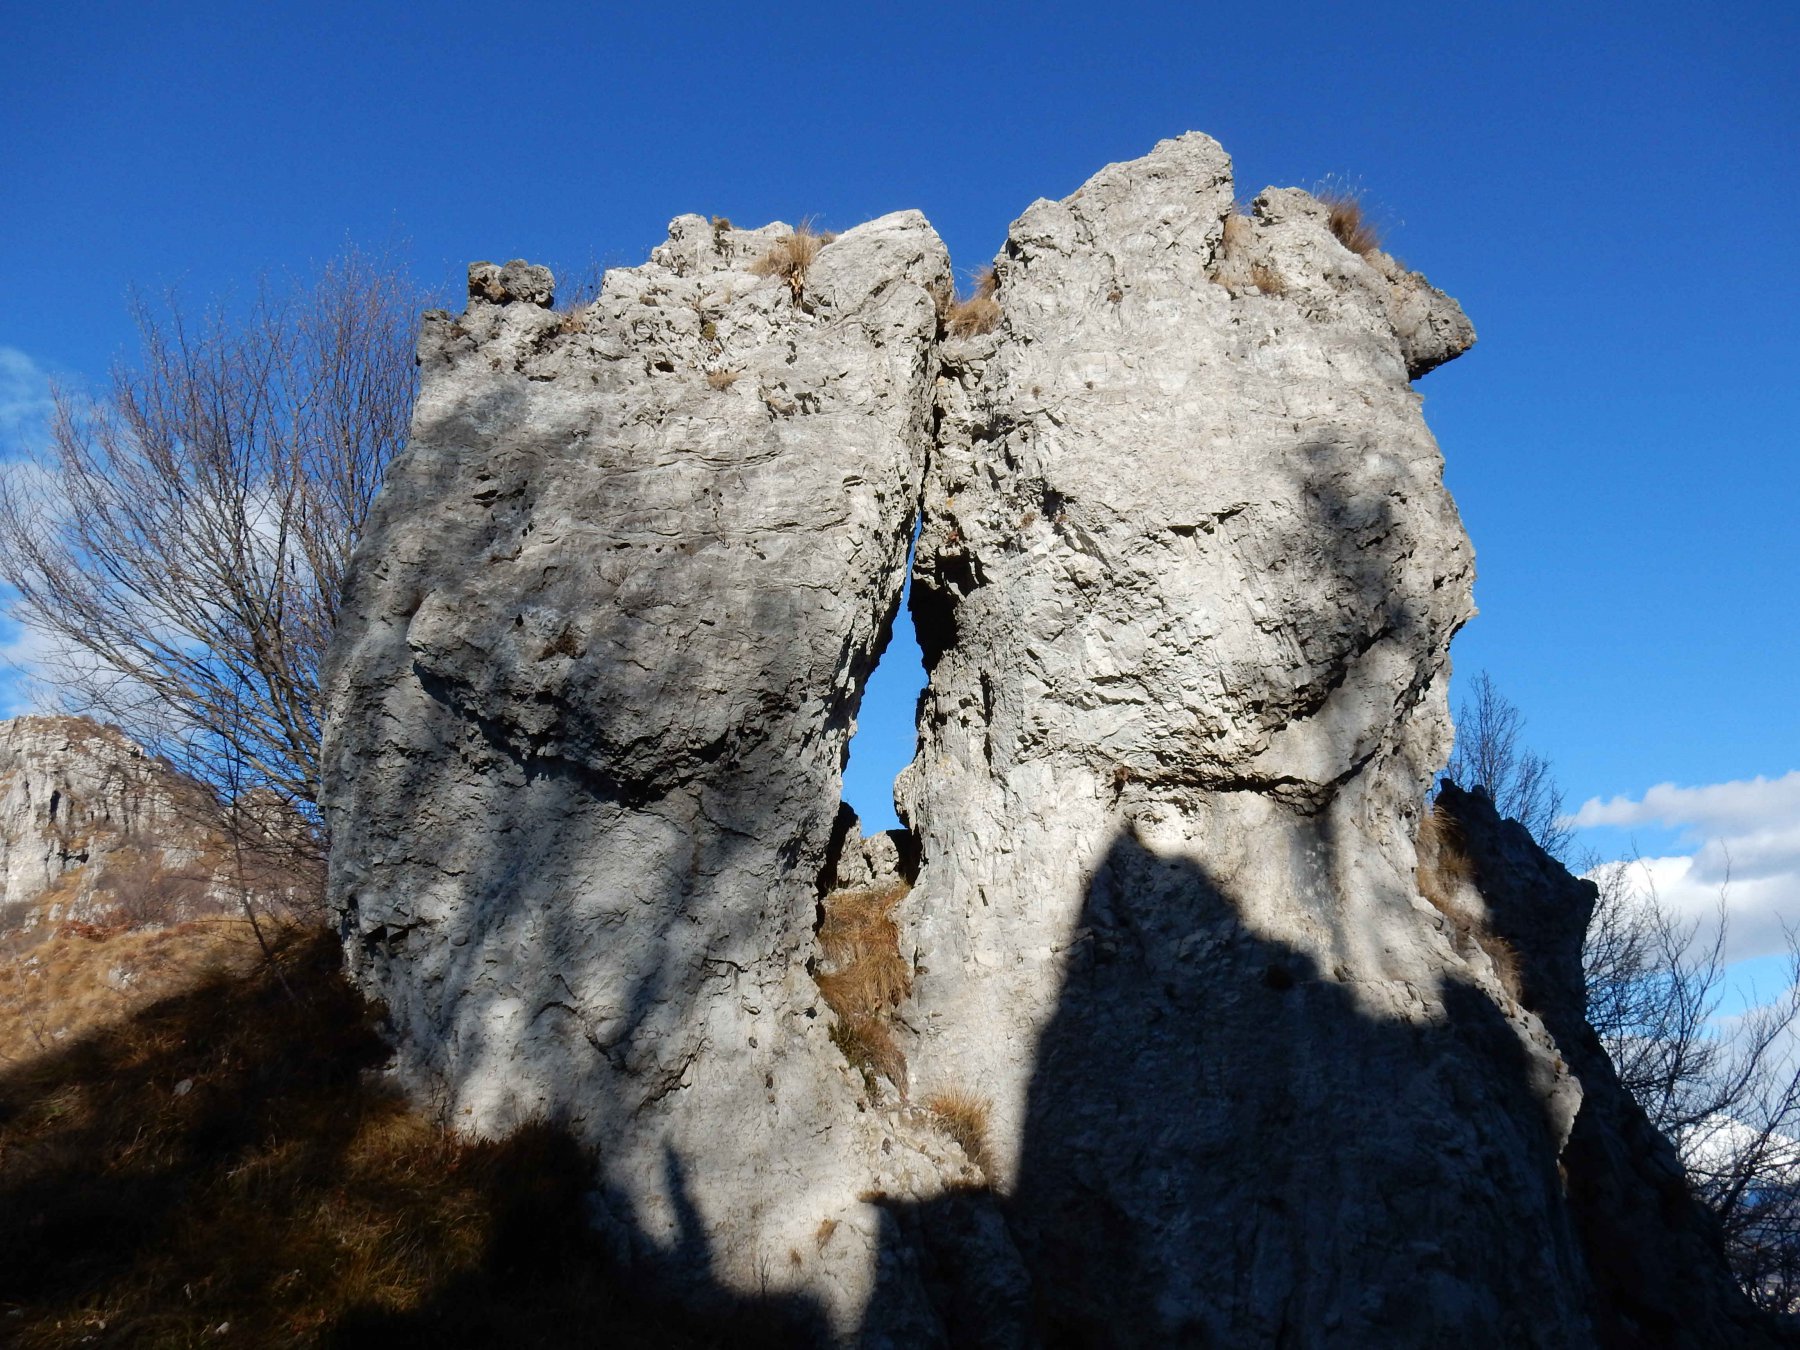 Formazione rocciose sul percorso.